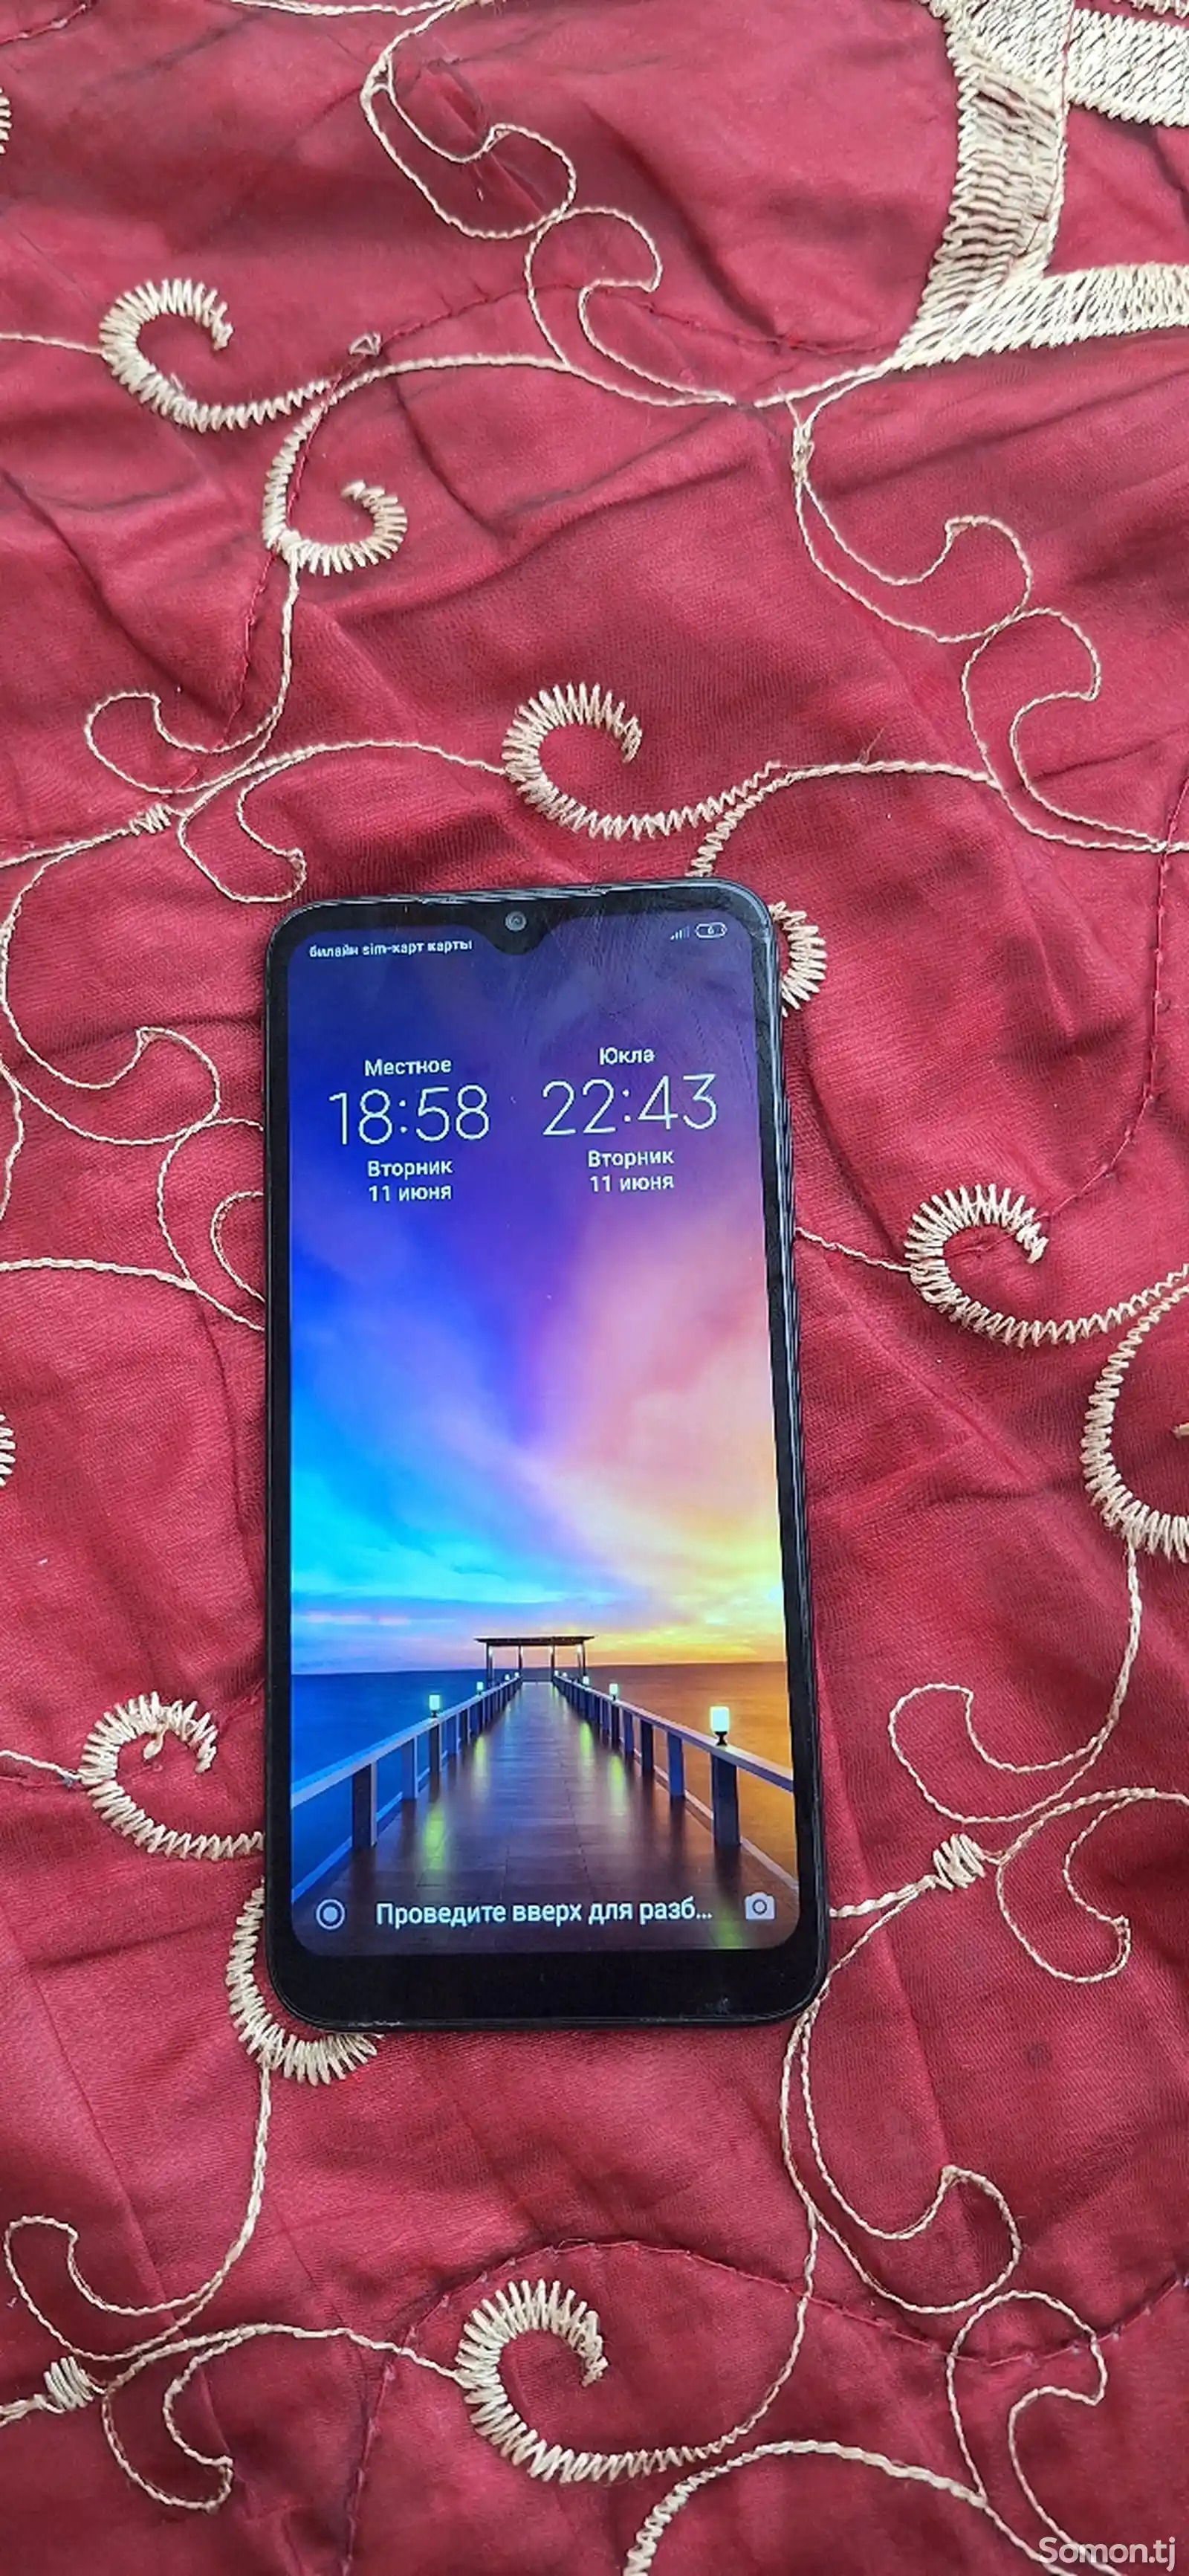 Xiaomi Redmi 7-1